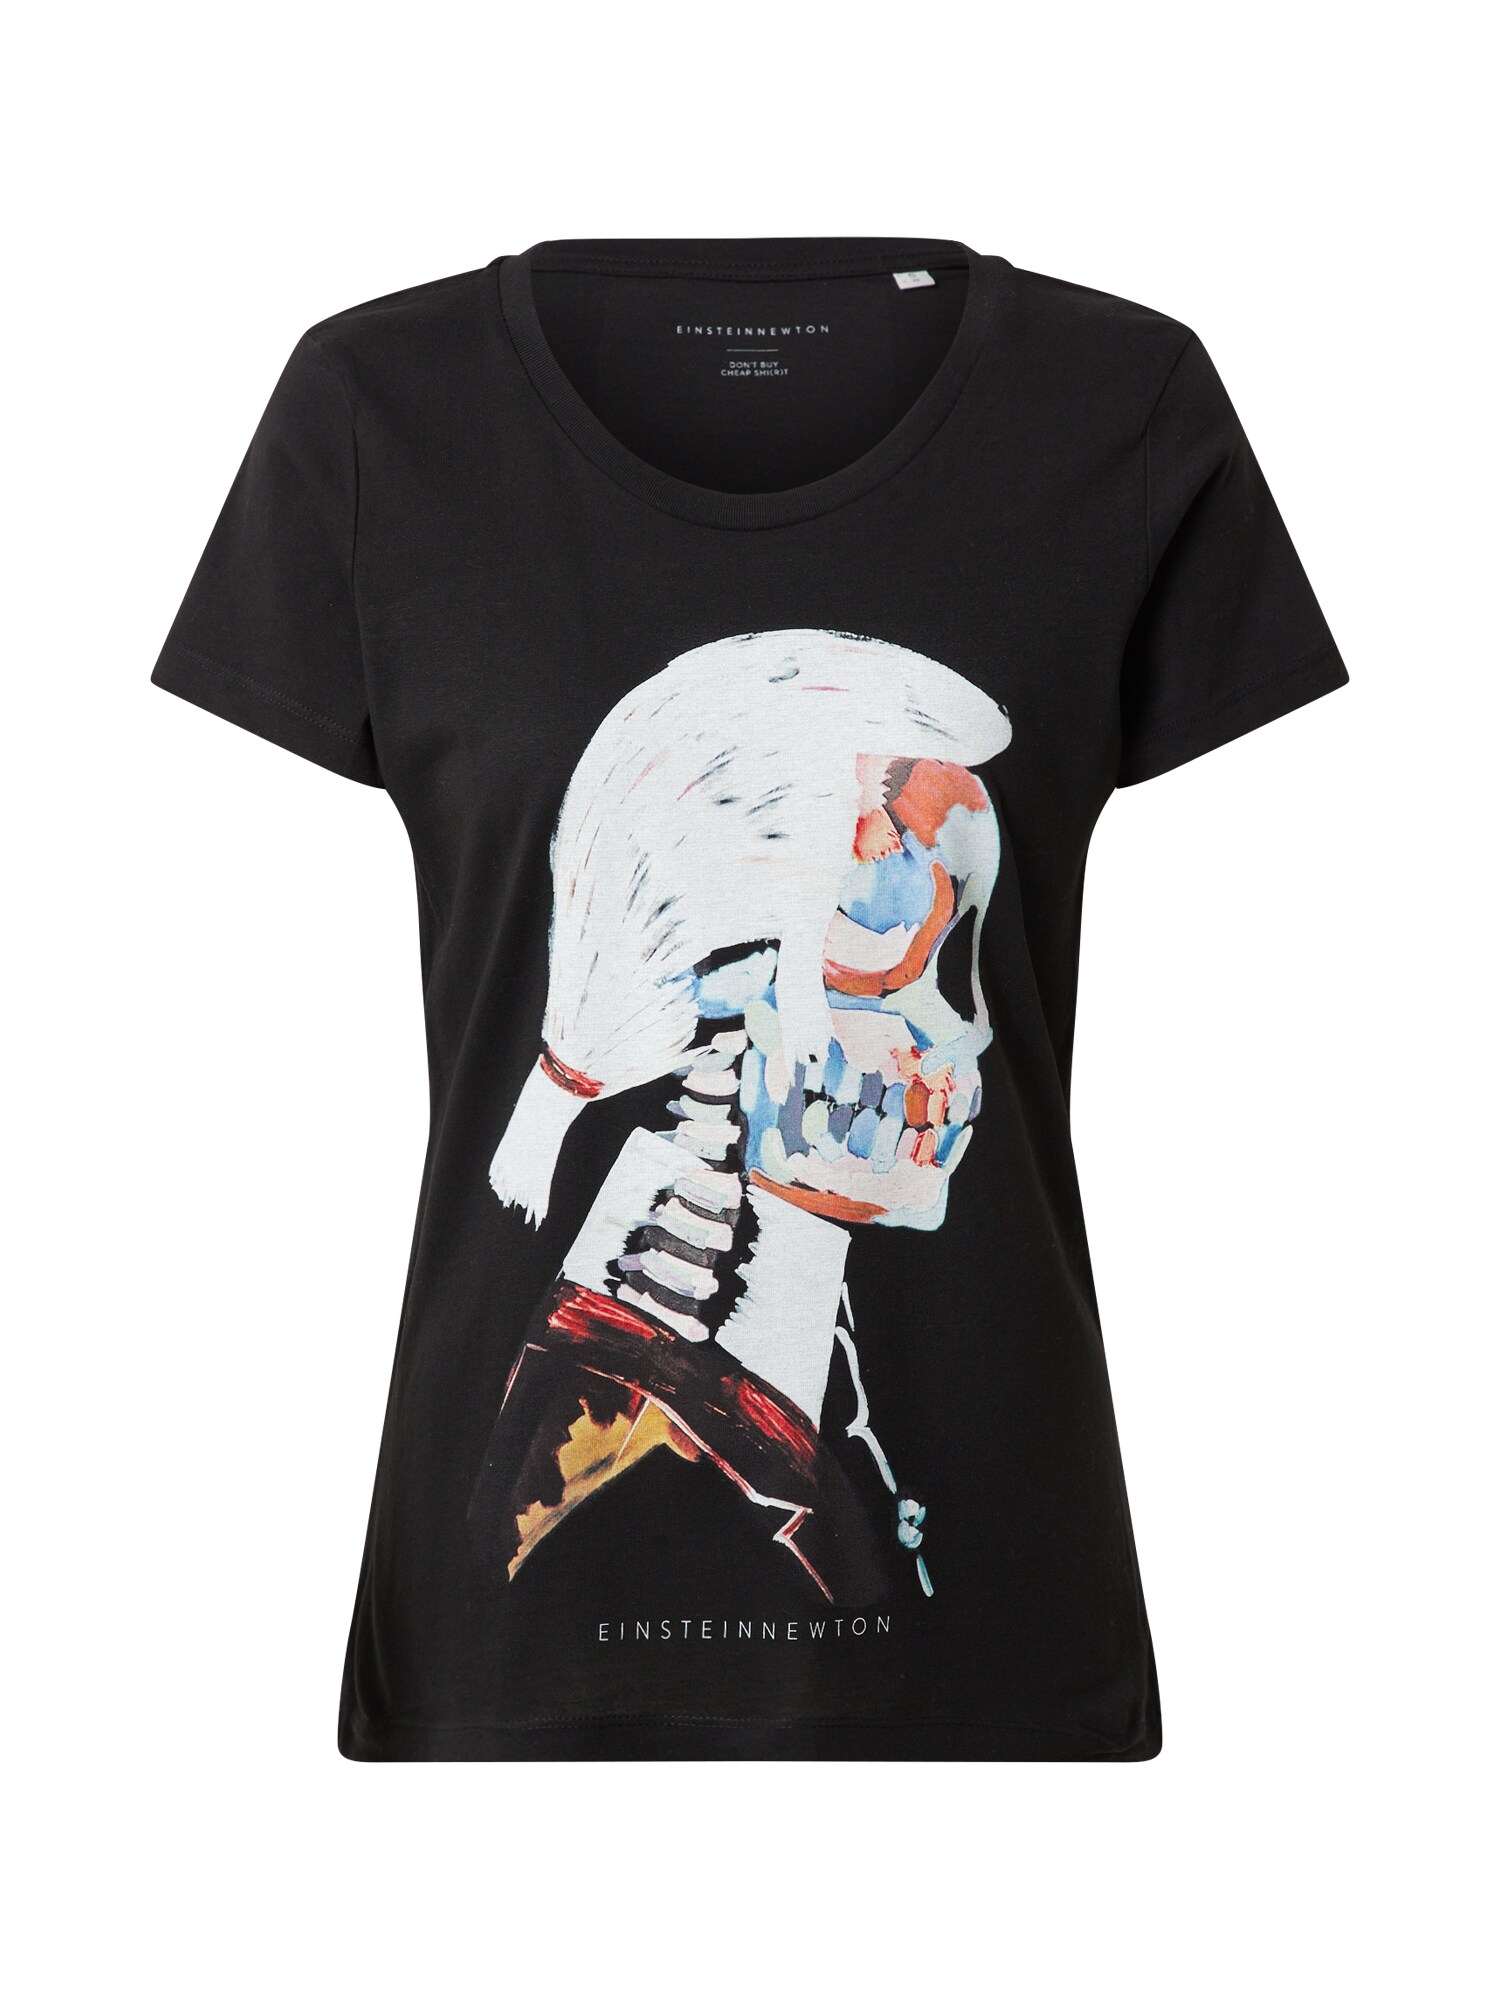 EINSTEIN & NEWTON Marškinėliai 'Fashion Art'  mišrios spalvos / juoda / balta